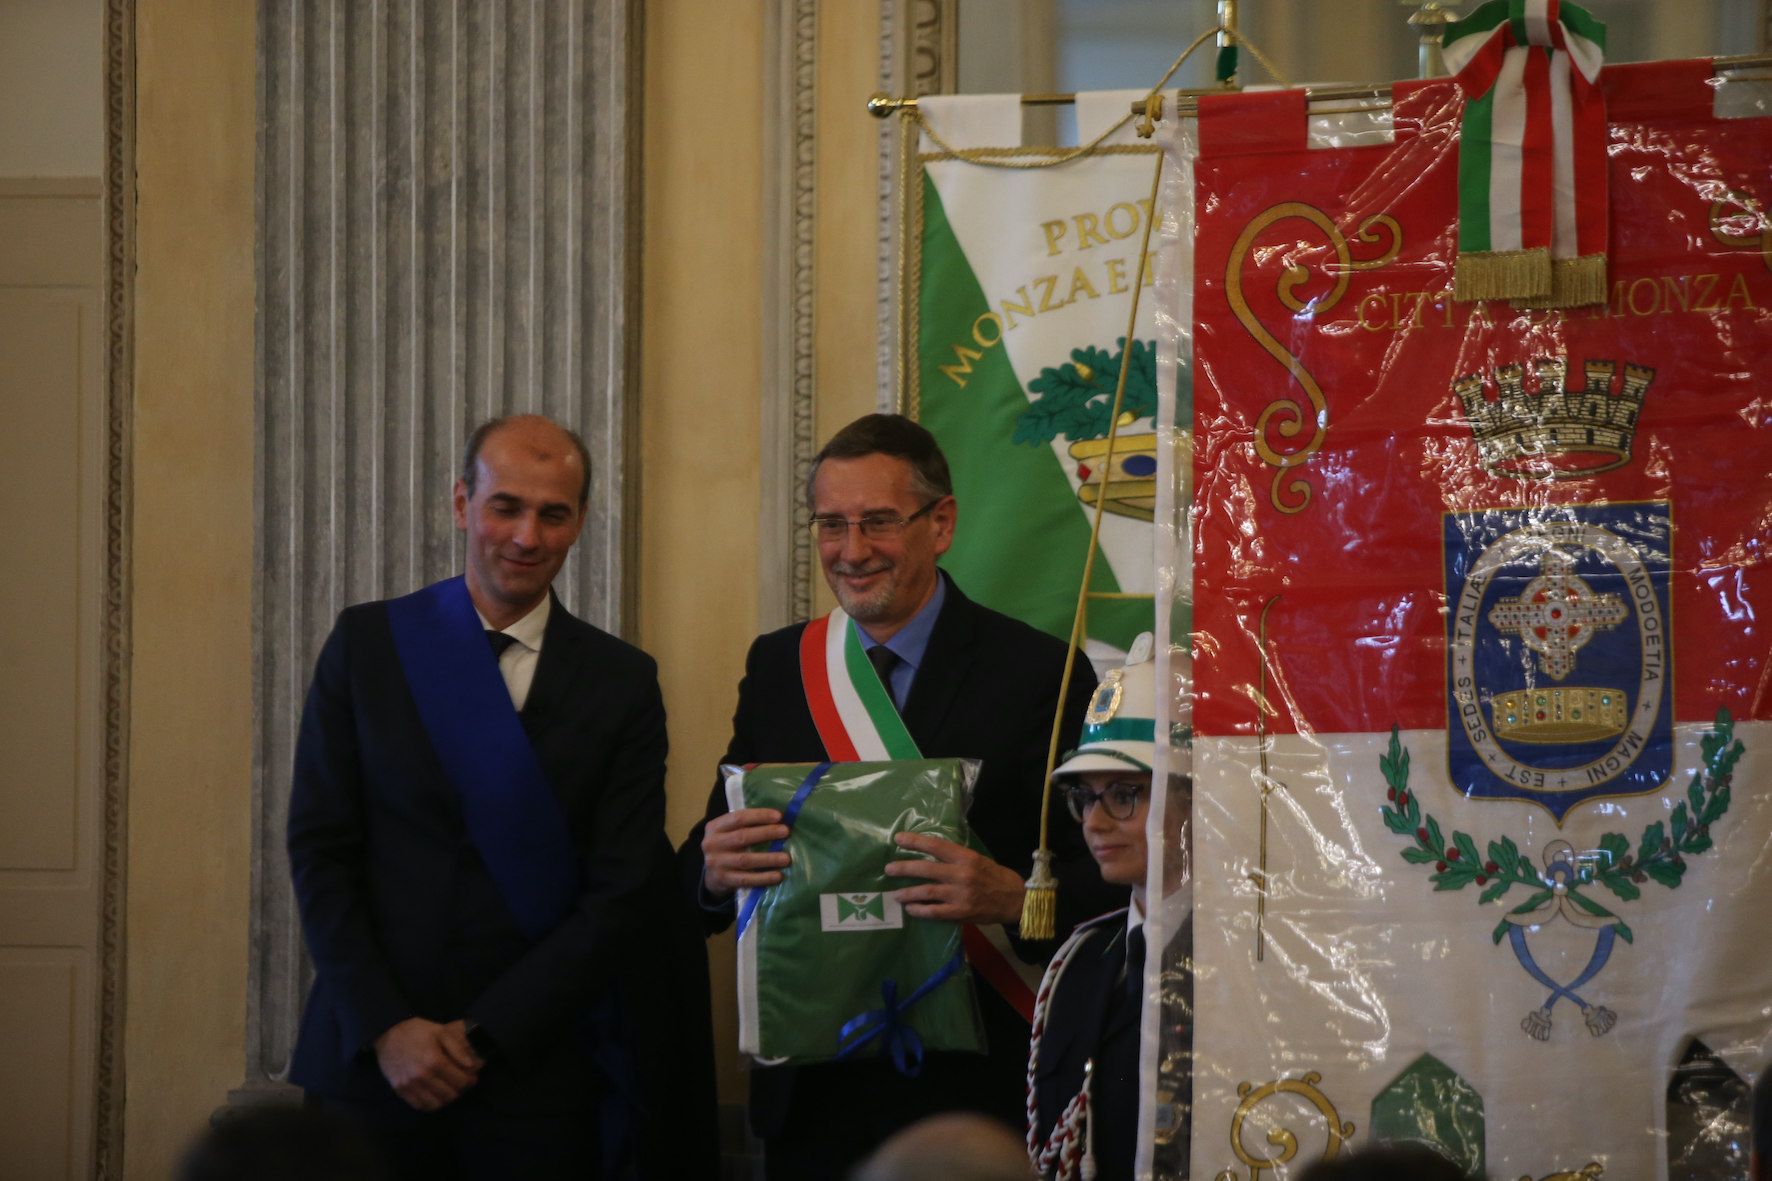 Cerimonia della Provincia in Villa reale: la consegna della bandiera al sindaco del capoluogo, Paolo Pilotto